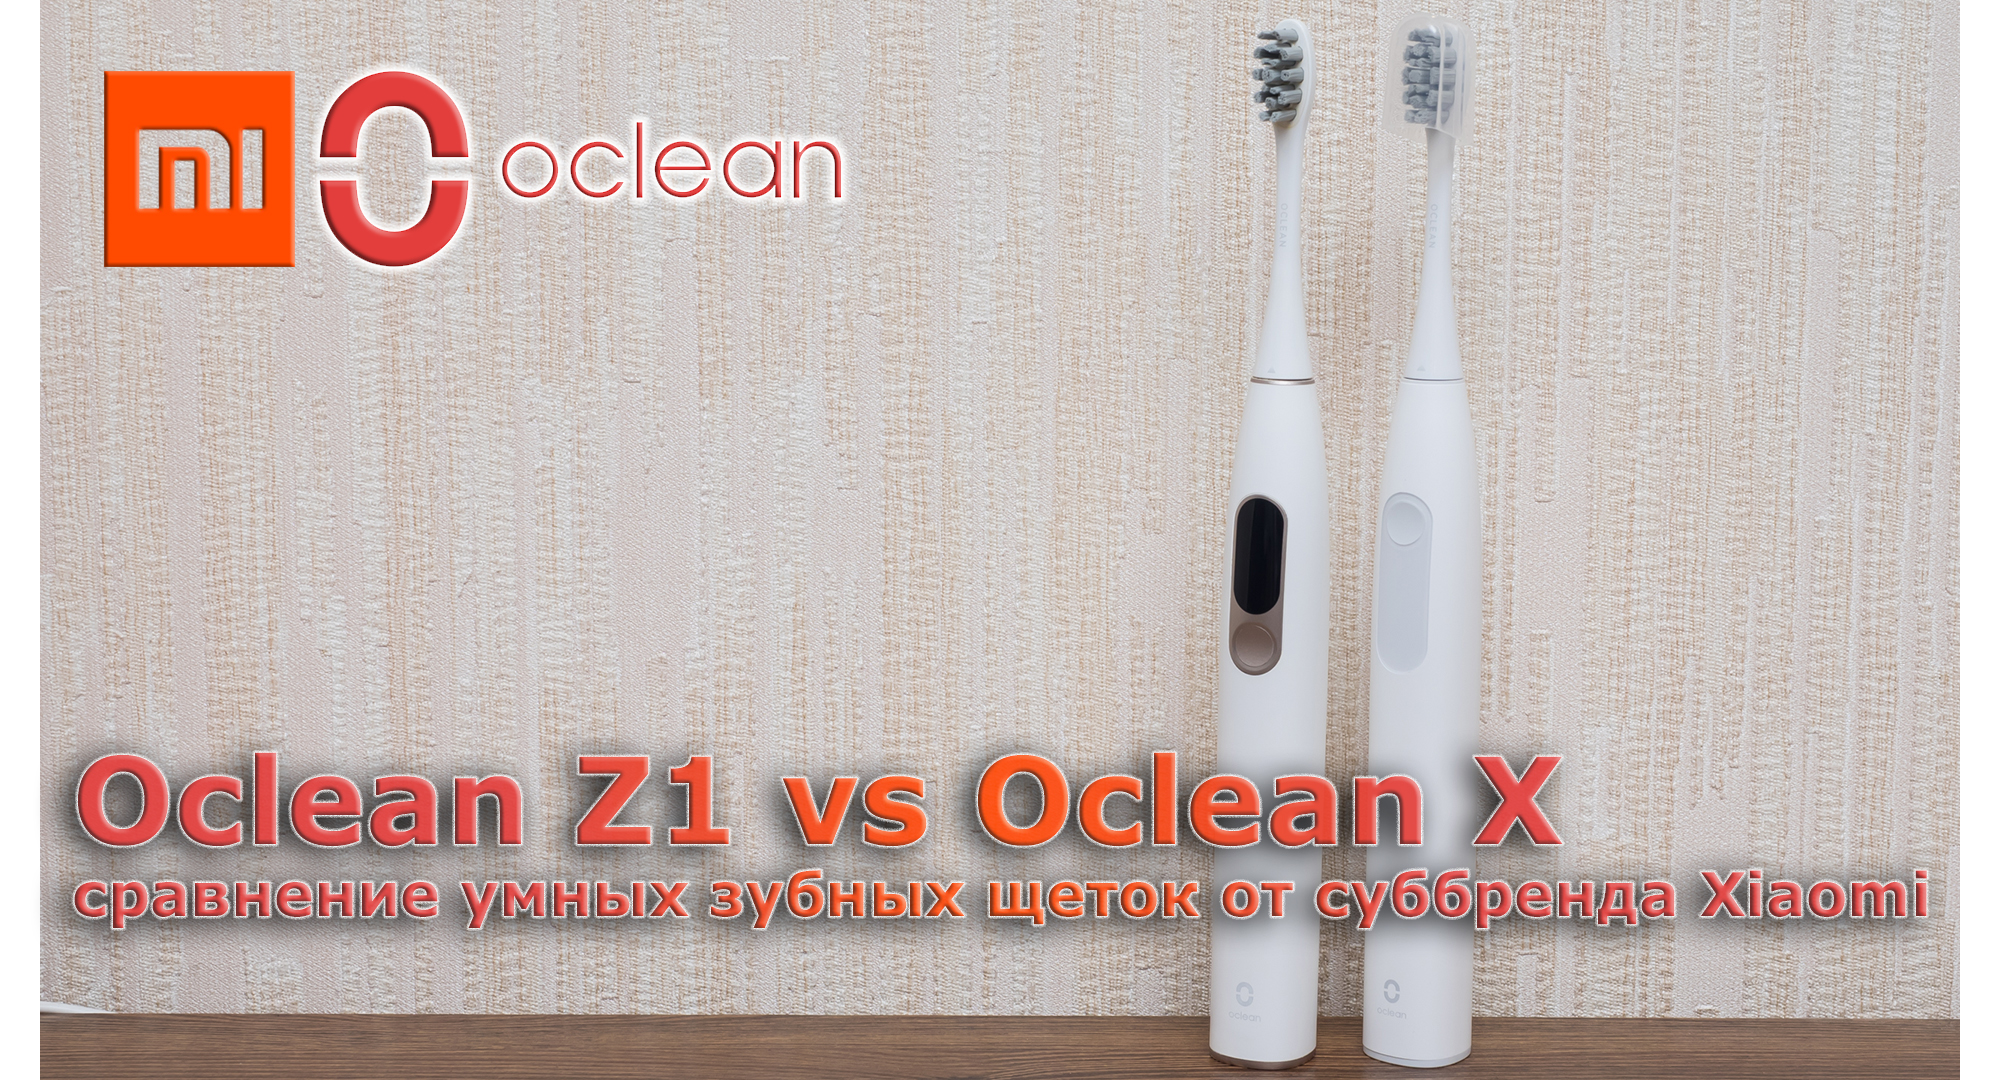 Oclean Z1 vs Oclean X: مقارنة فرشاة أسنان ذكية Xiaomi مقارنة بفرشاة الأسنان الذكية 58